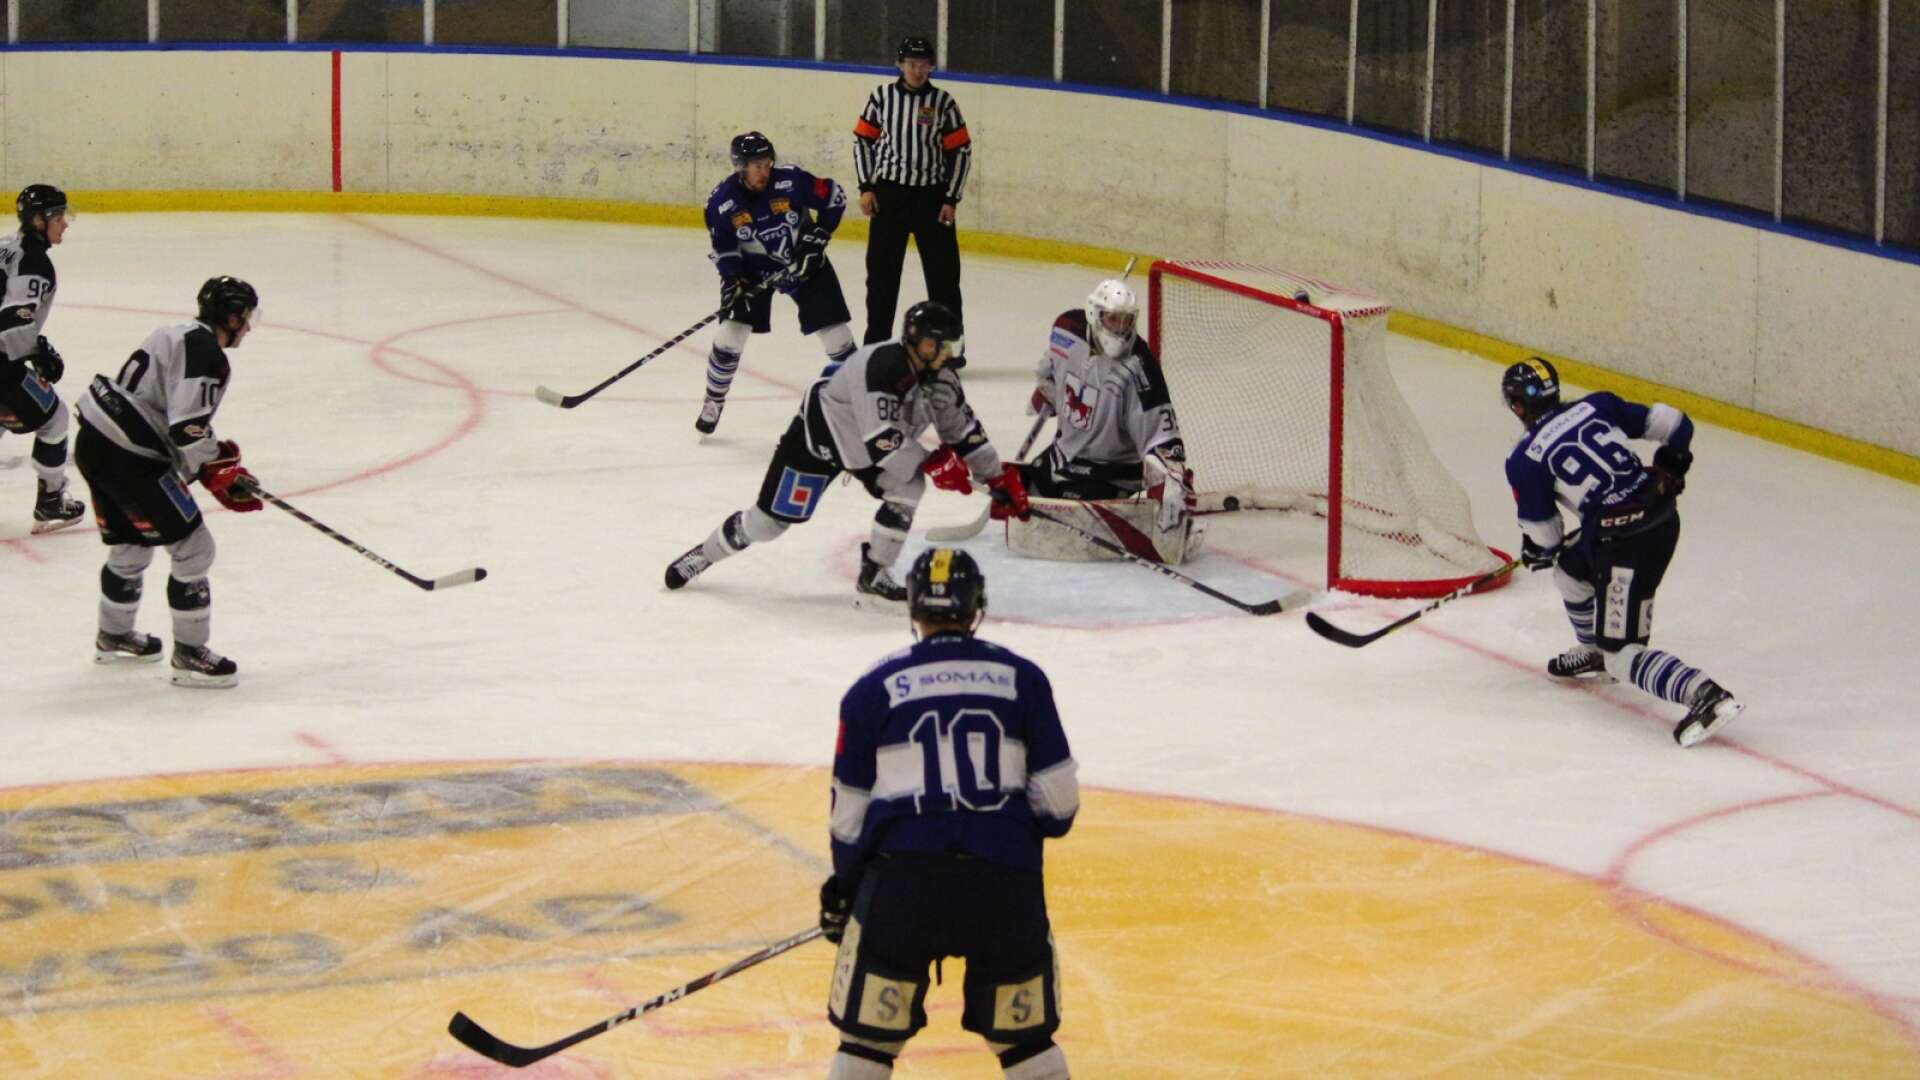 Den 26 september är det dags för seriestart i HockeyTvåan - den 29 september spelas första matchen i Somashallen. Säffle HC:s premiär, den 26:e, spelas borta mot Filipstad. Bilden är från förra säsongens träningsmatch mot Filipstad.